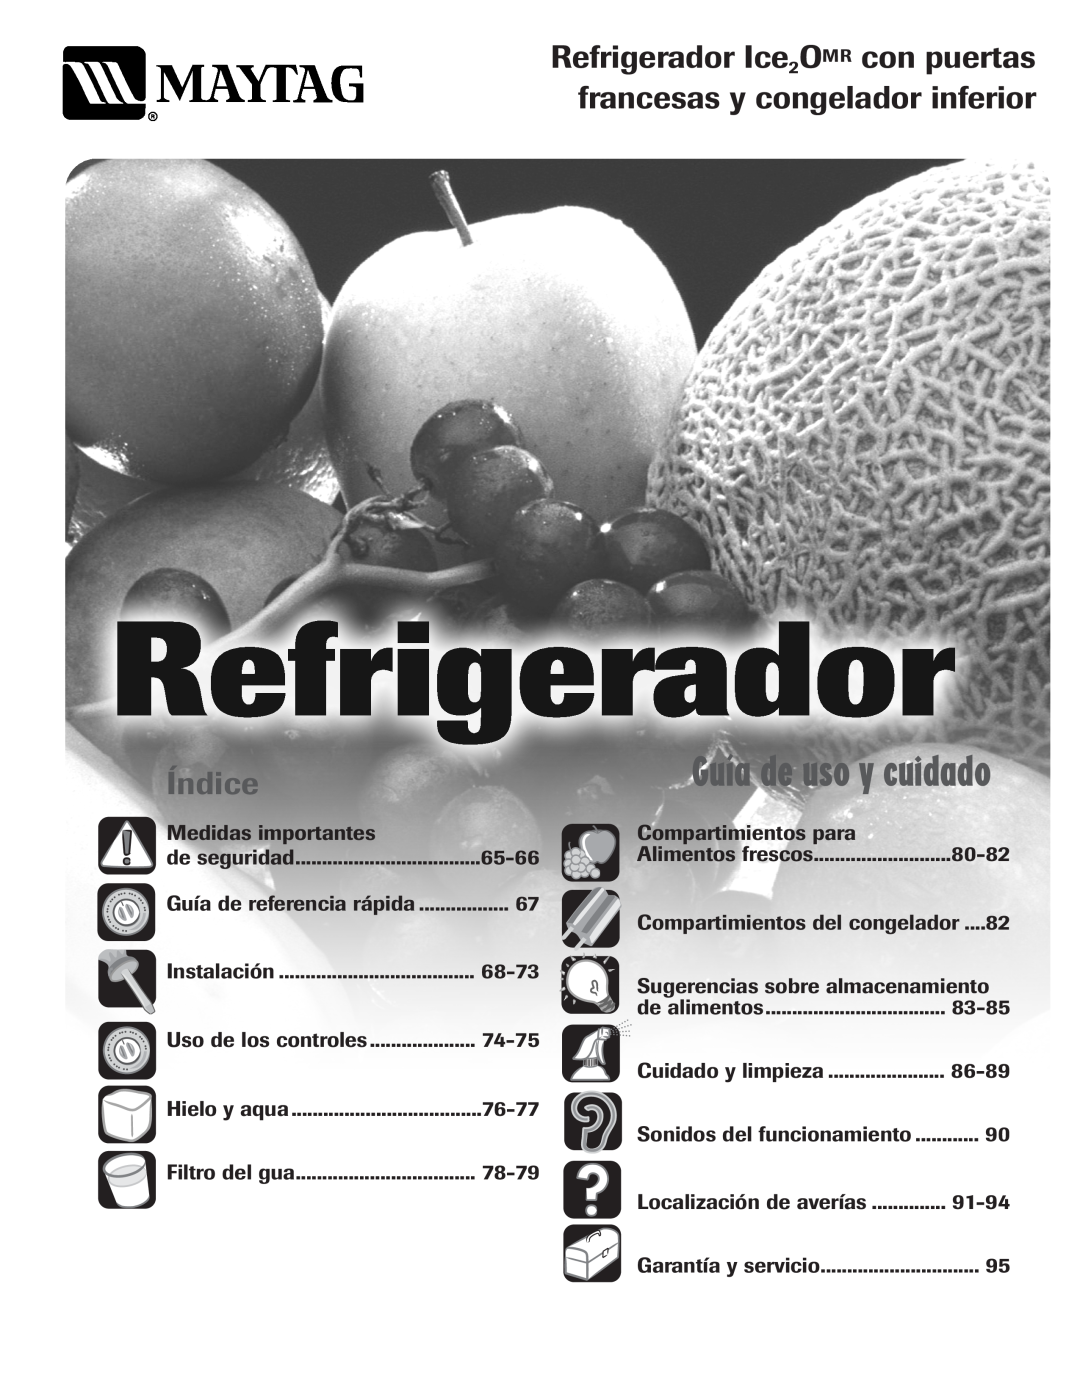 Maytag MFI2266AEW Refrigerador Ice2OMR con puertas francesas y congelador inferior, Índice, Guía de uso y cuidado 